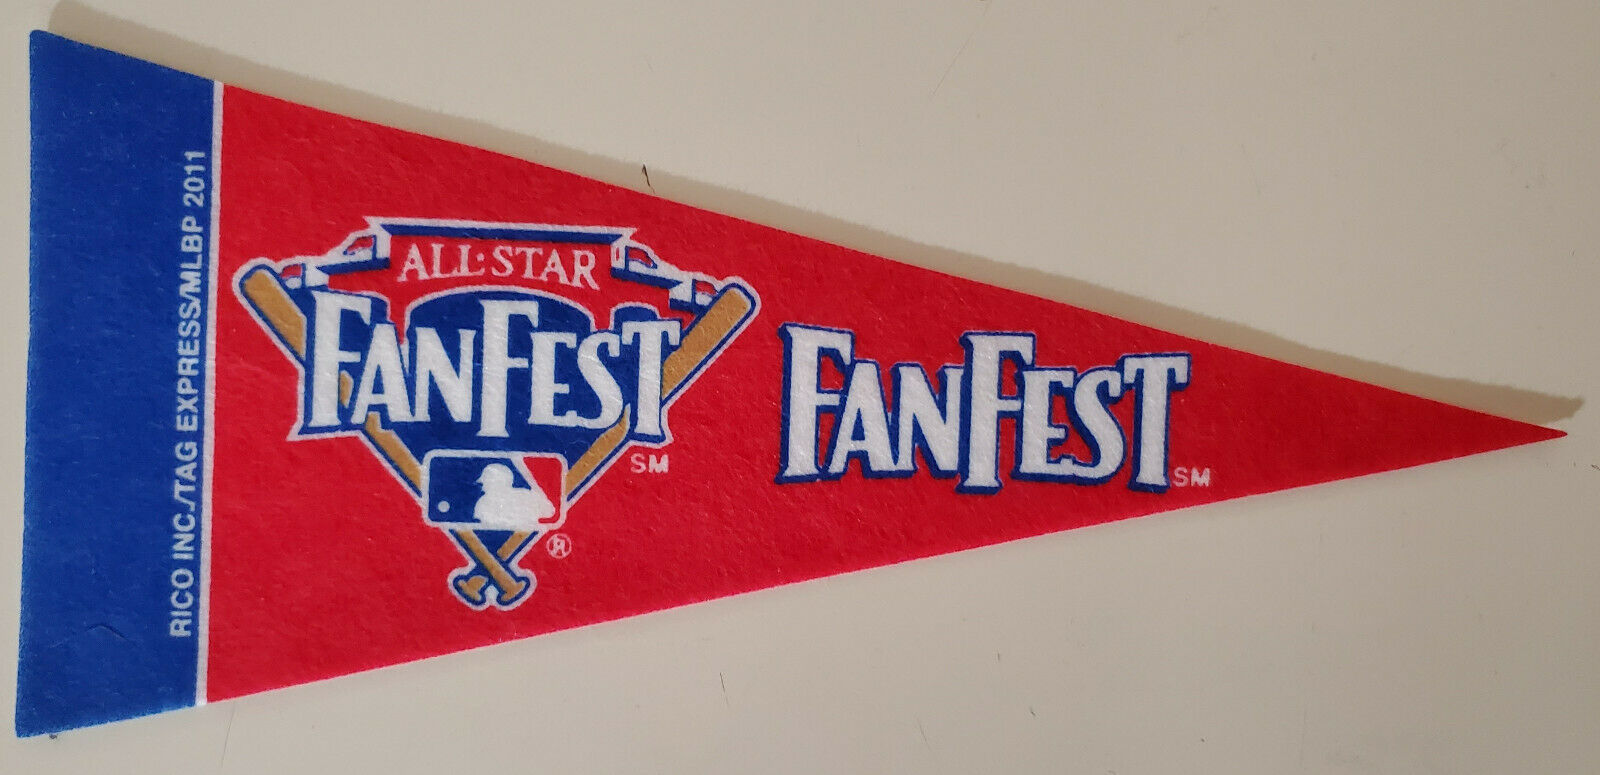 2011 MLB All Star FanFest 9" x 4" Mini Pennant Fan Fest Phoenix Arizona - $5.99